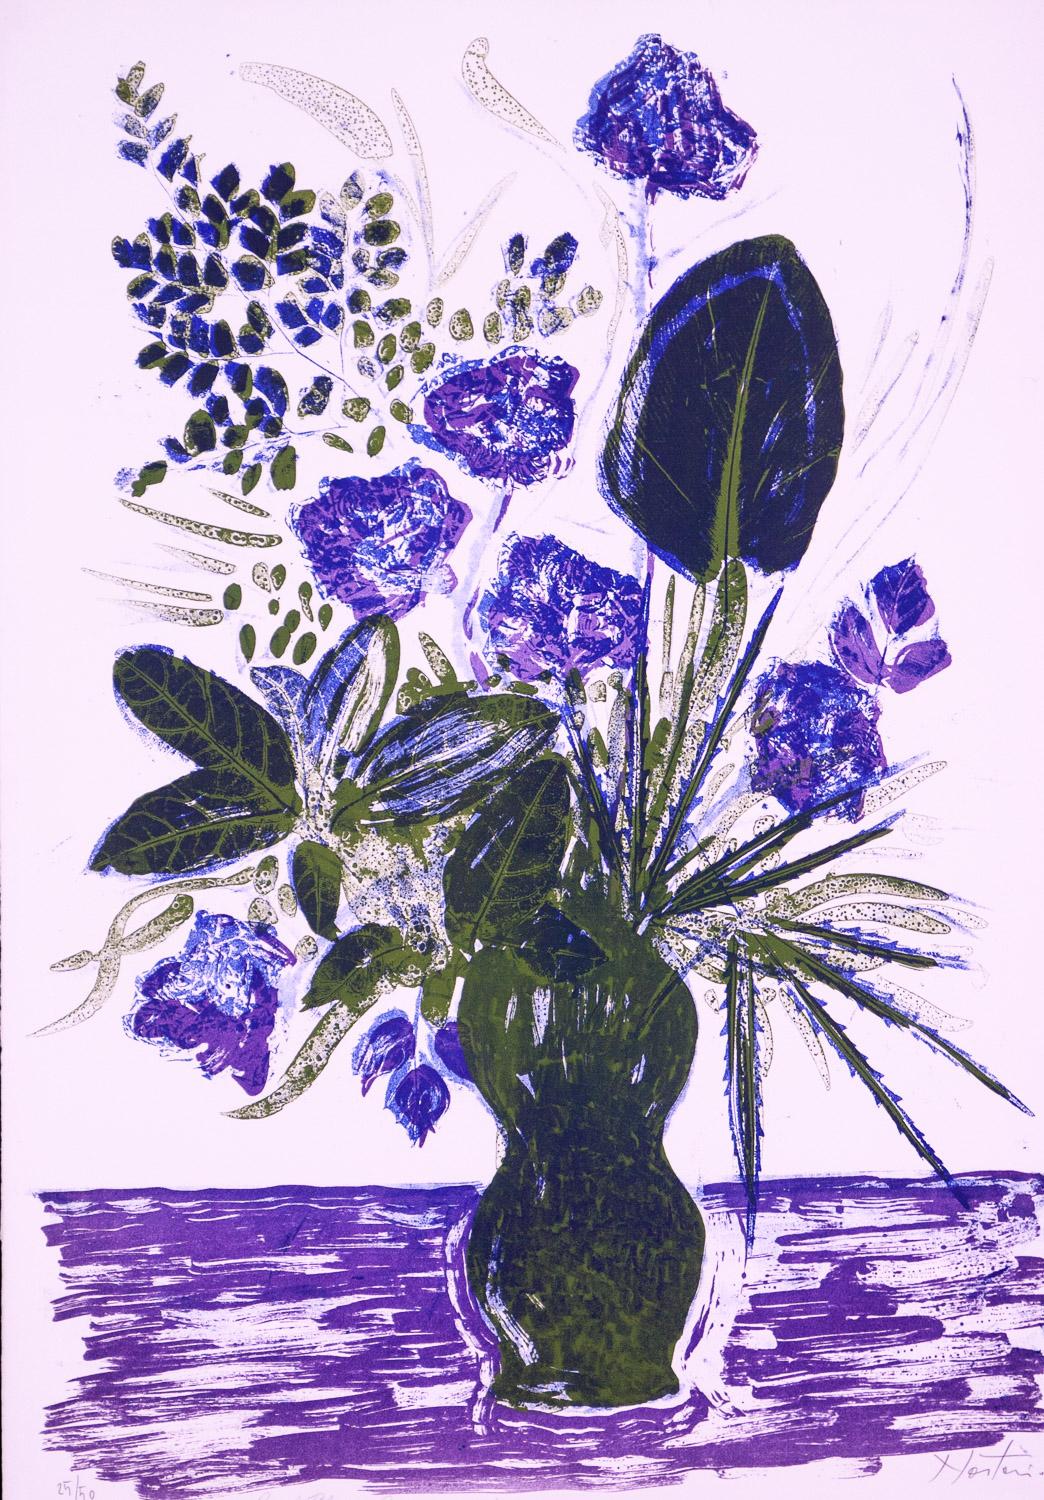        Regal Flower Arrangement ist eine Original-Lithografie in limitierter Auflage (25/50) von Alessandro Nastasio. Eine große Vase mit lilafarbenen Blumen und viel Grün steht auf einem lilafarbenen Tisch und sprüht vor Farbe und Energie.
     